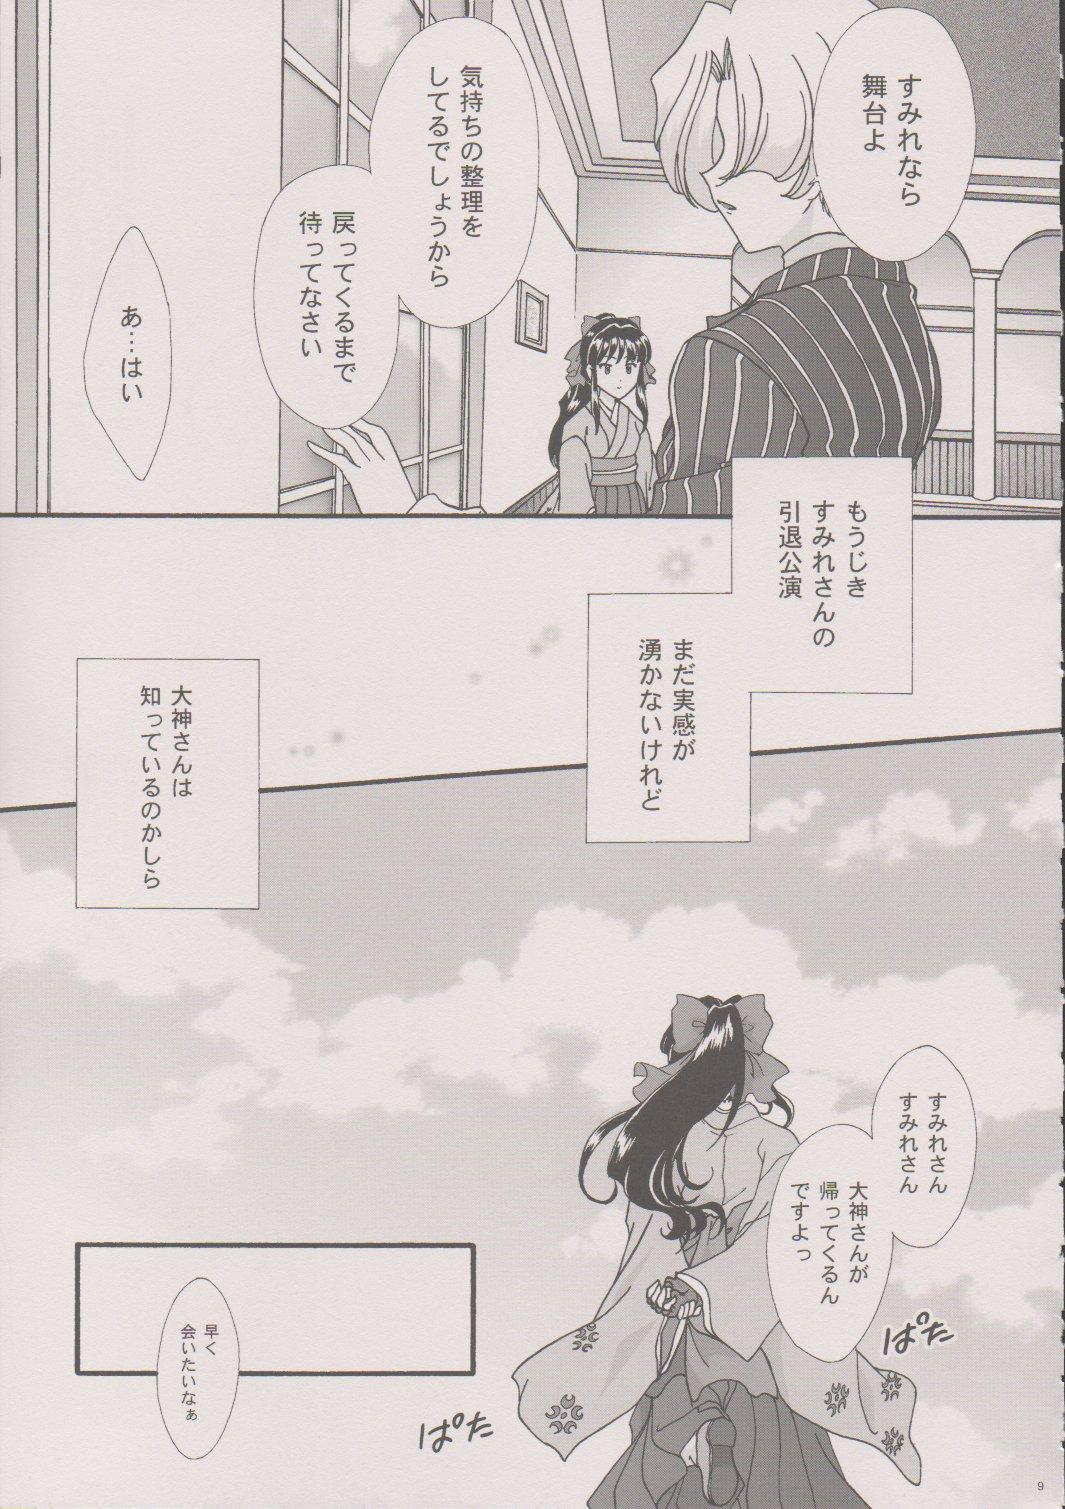 Redhead [TSK (Fuuga Utsura)] Maihime ~Karen~ 6 Teito Yori. (Sakura Wars) - Sakura taisen Outdoor Sex - Page 8